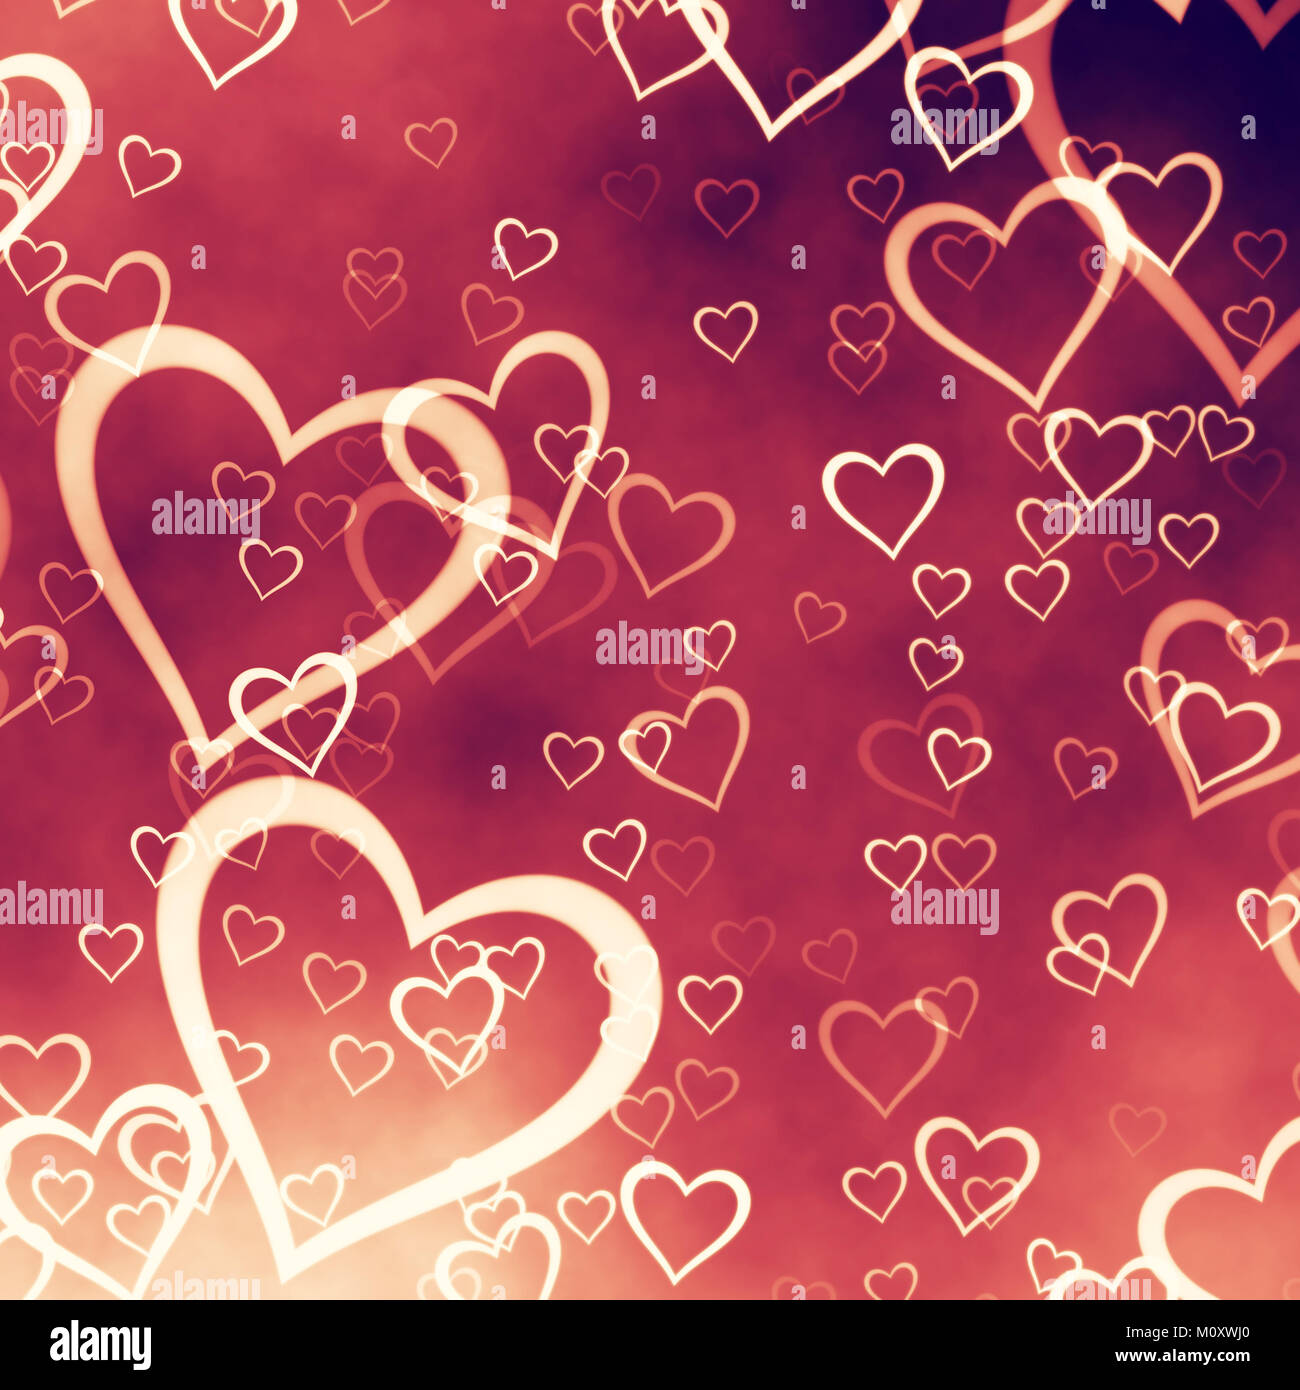 Love hearts Stock Photo